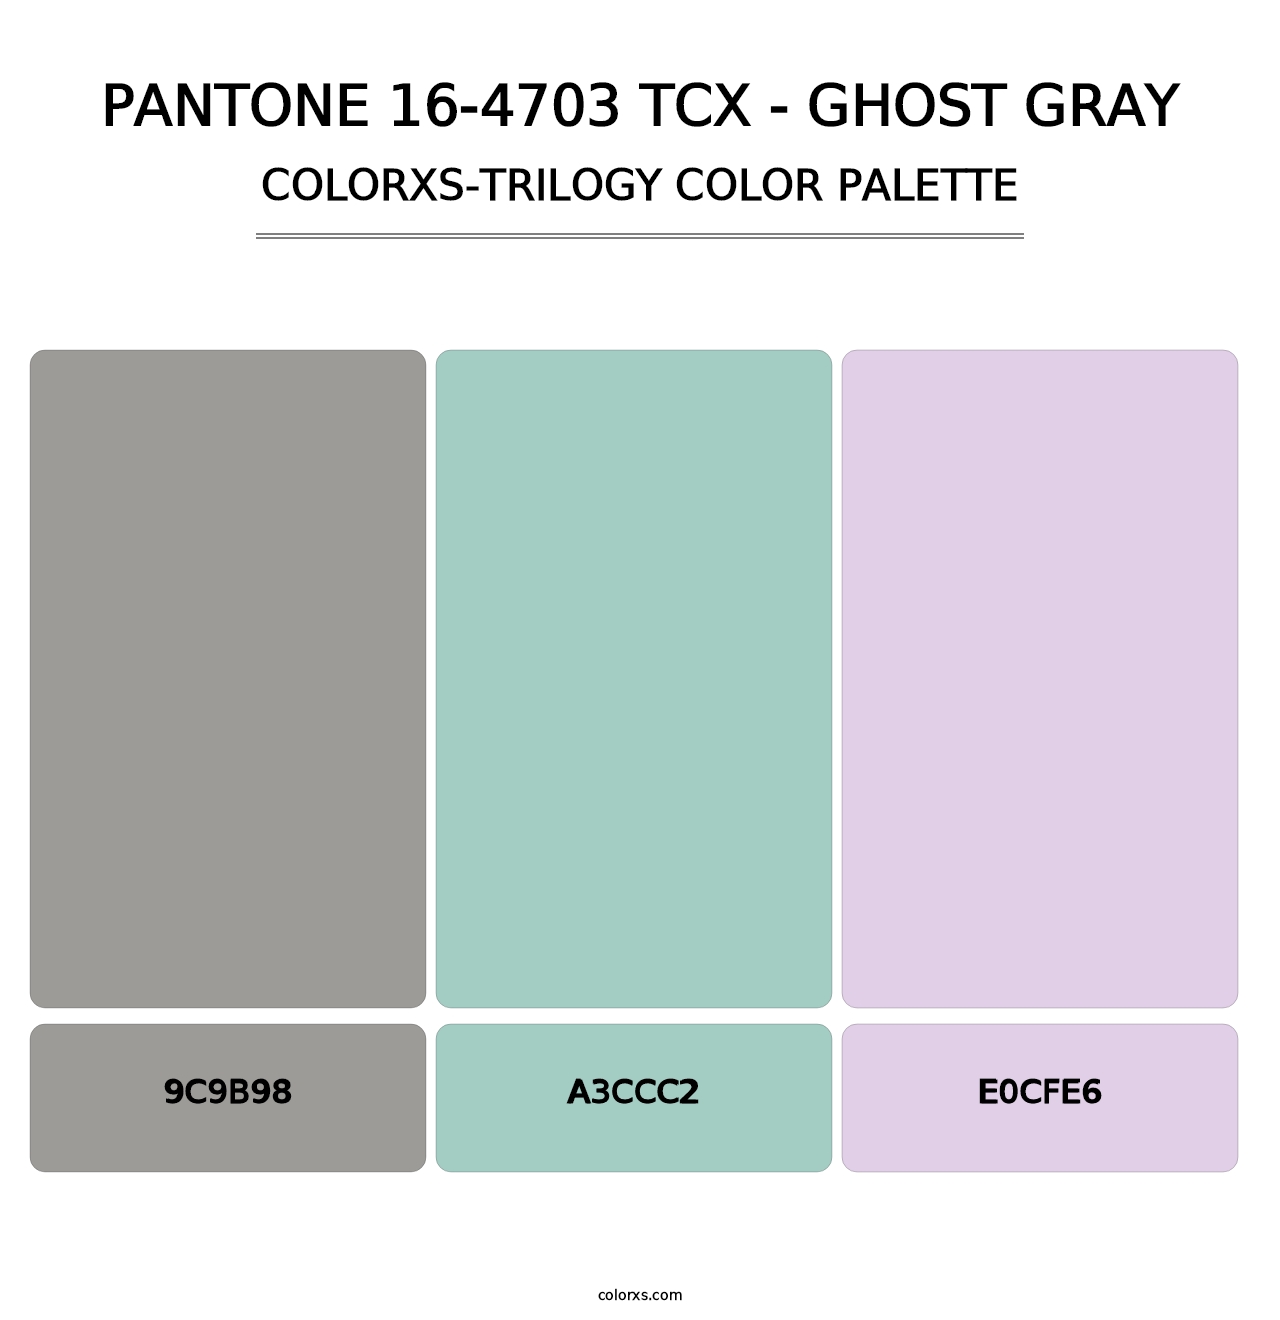 PANTONE 16-4703 TCX - Ghost Gray - Colorxs Trilogy Palette